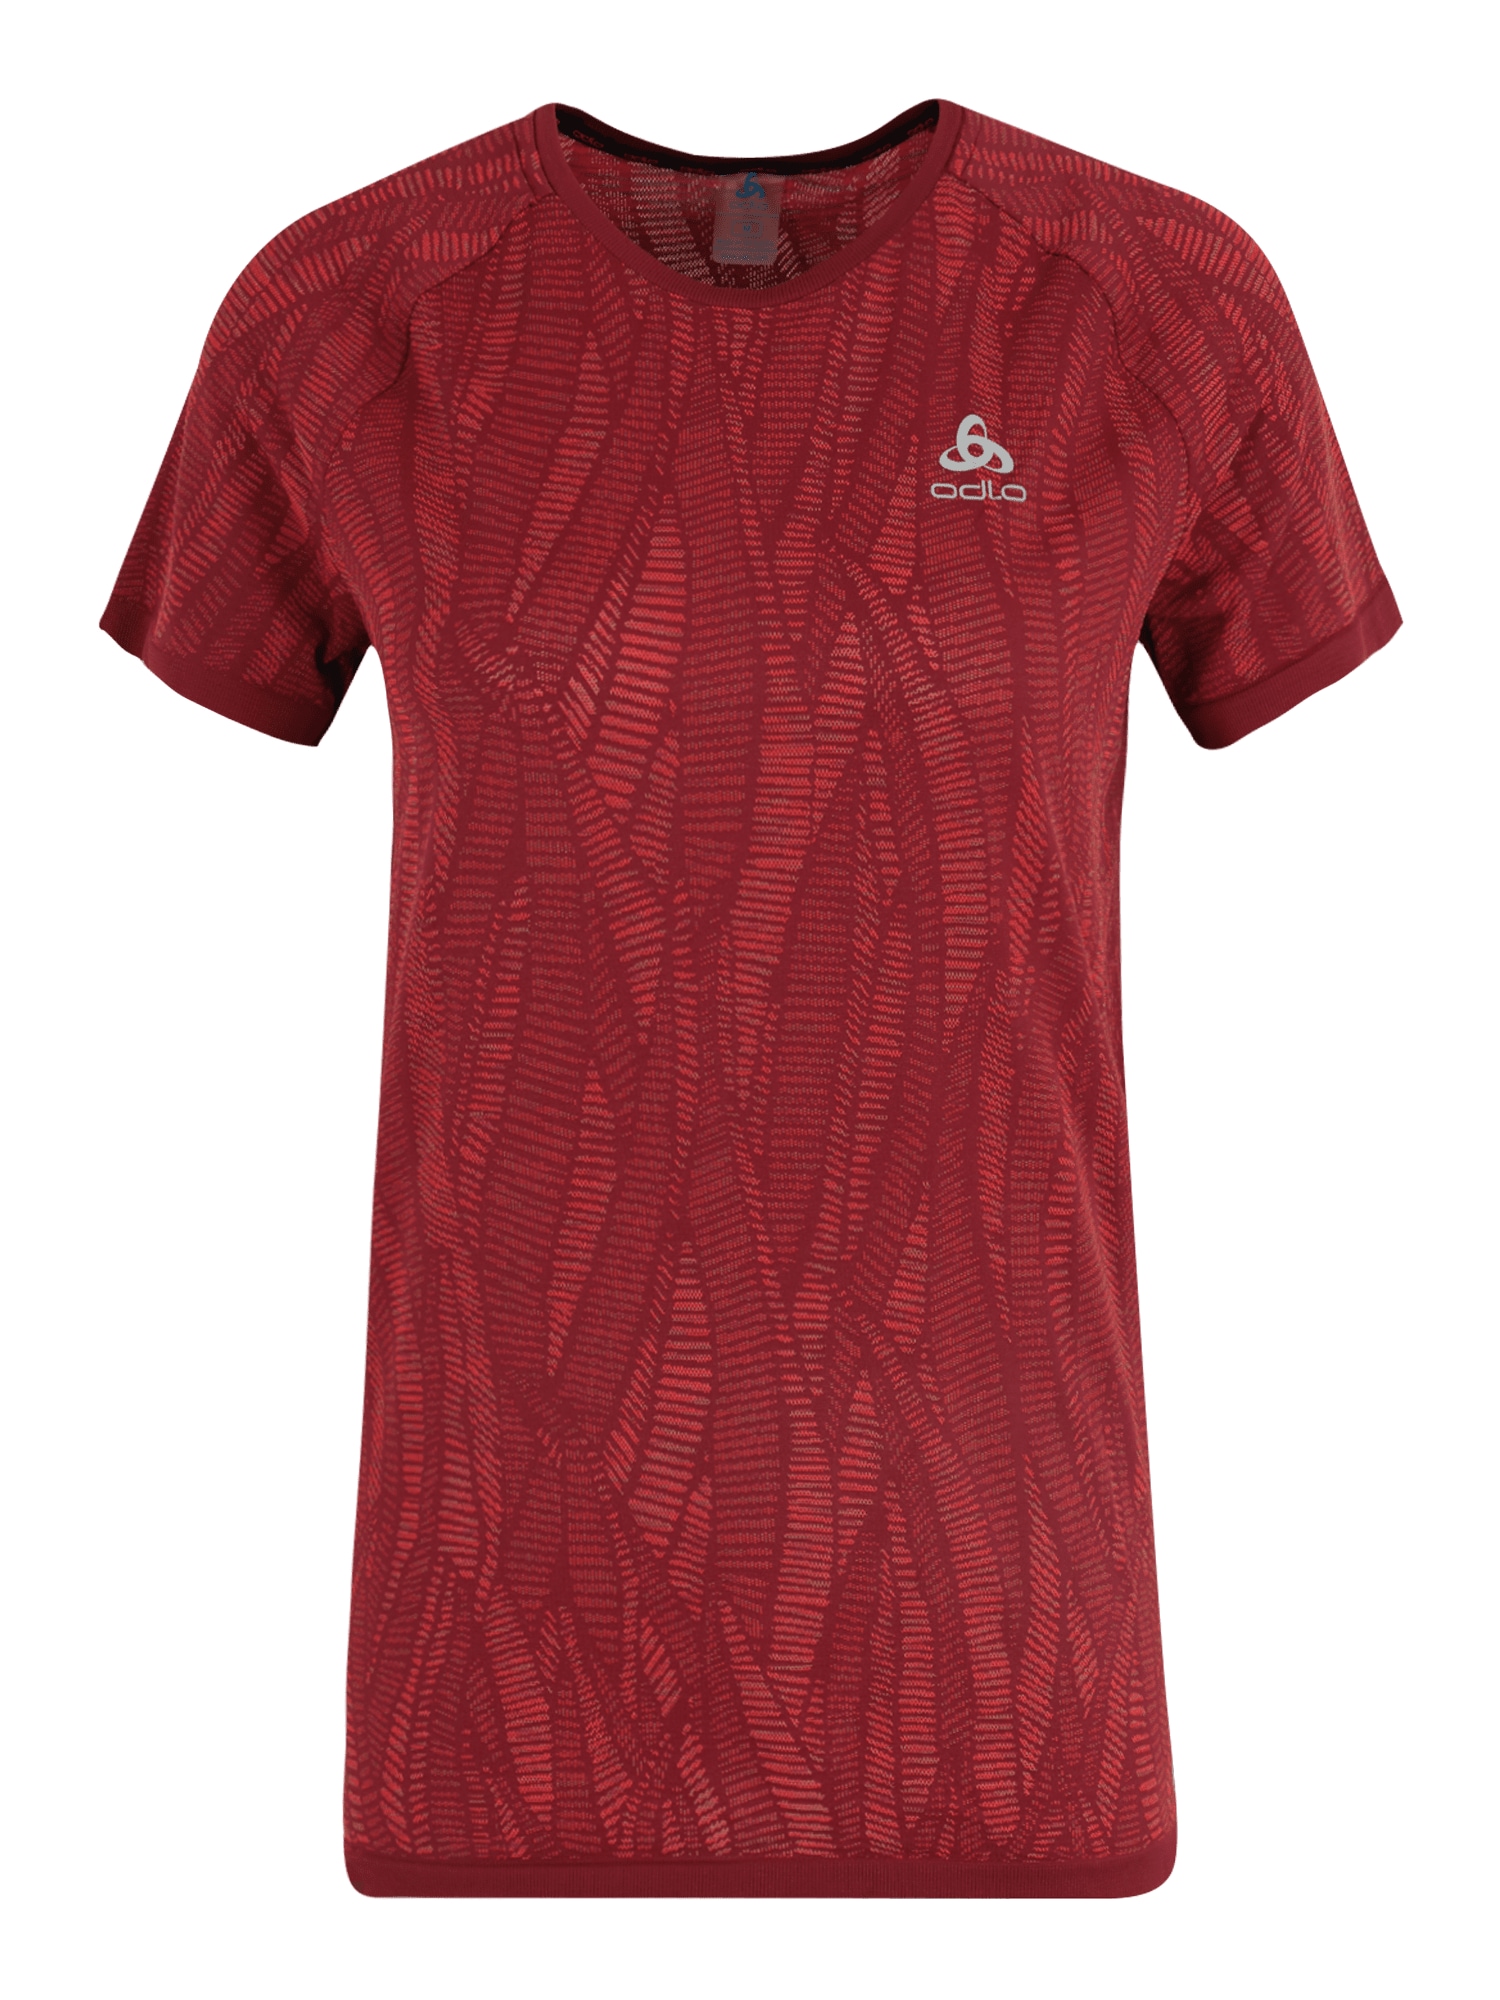 ODLO Sportiniai apatiniai marškinėliai šviesiai pilka / raudona / melionų spalva